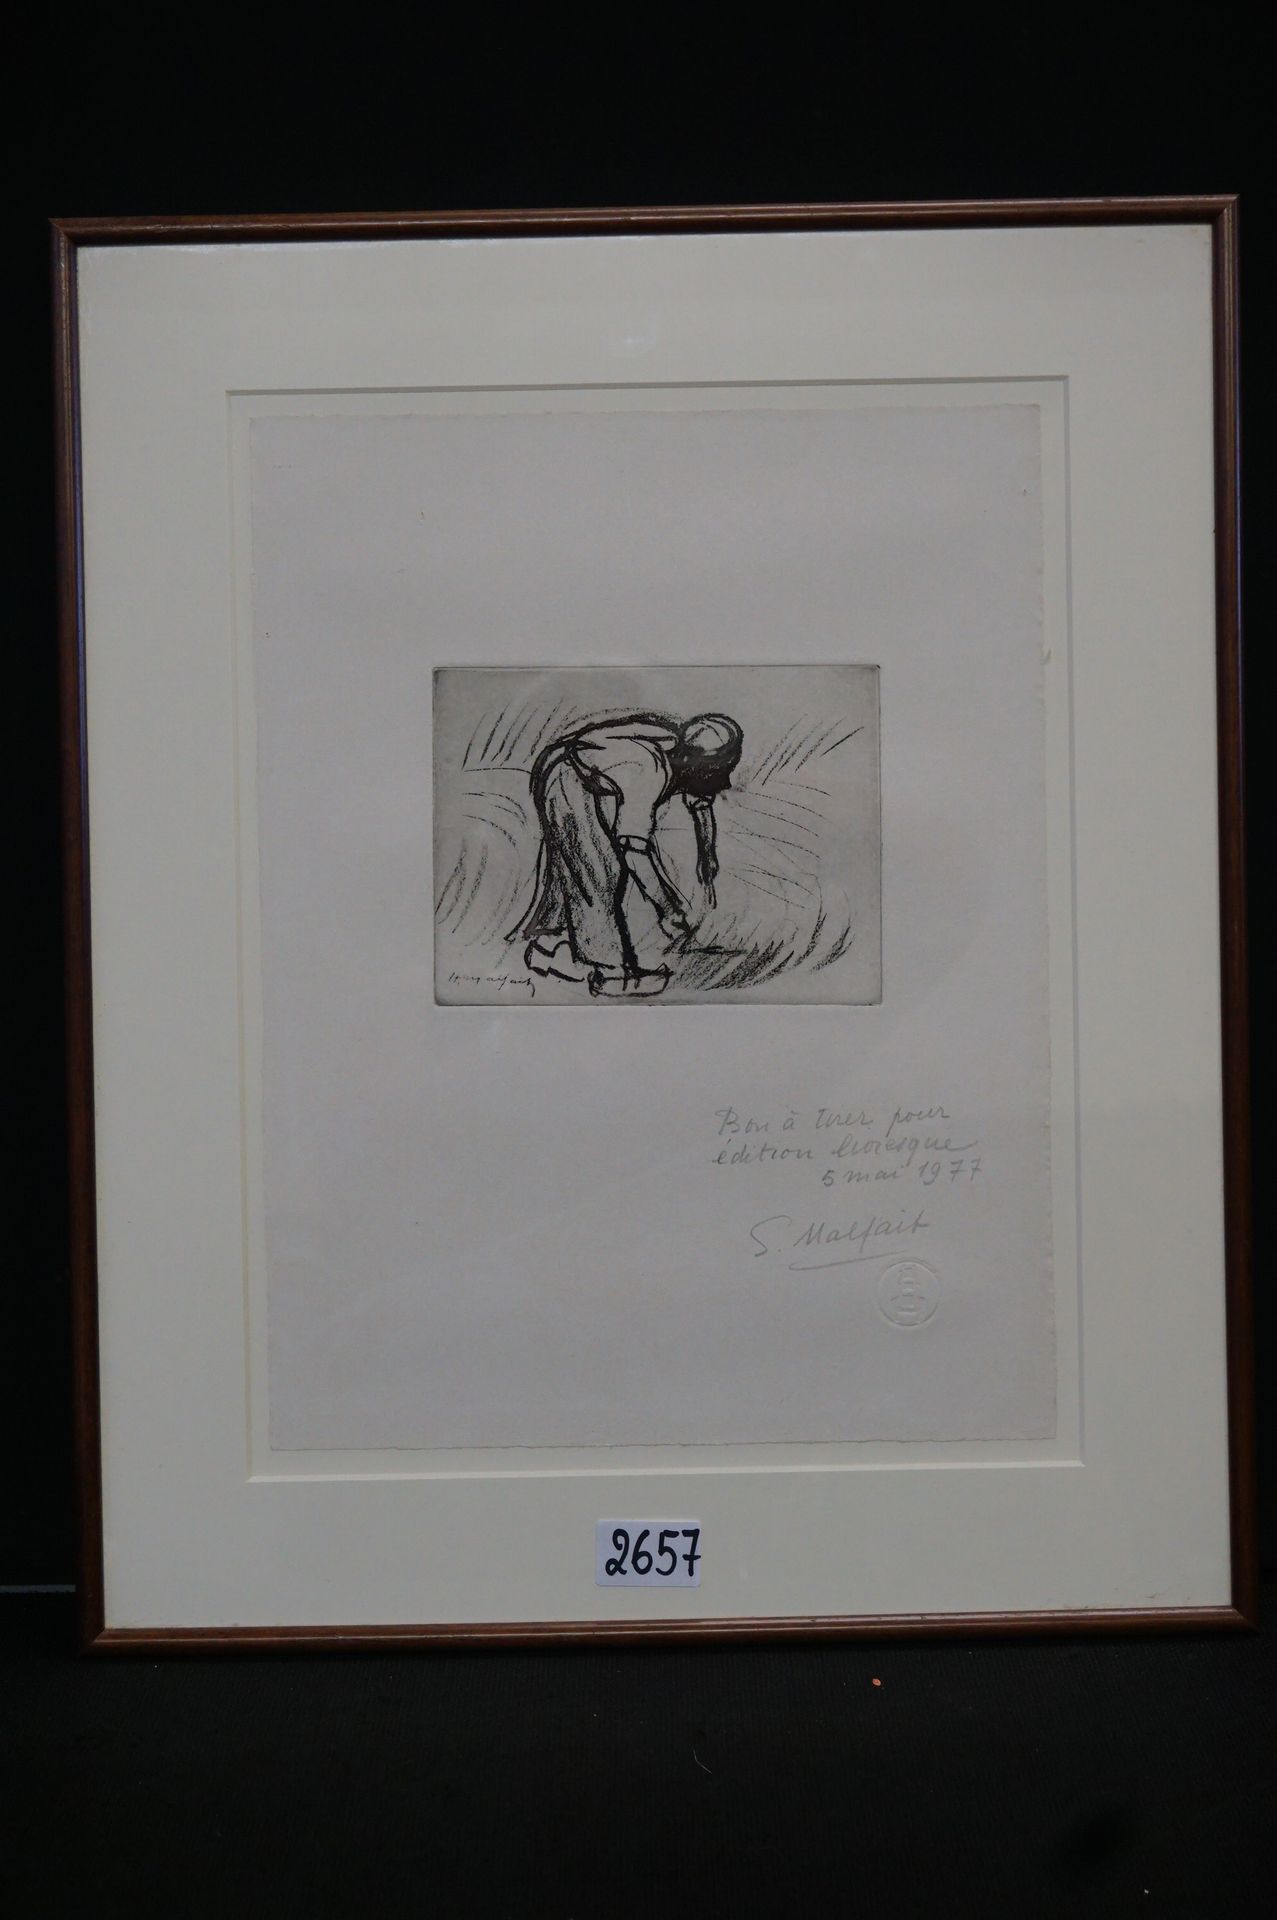 HUBERT MALFAIT (1898 - 1971) "收割者" - 蚀刻画 - 铅笔签名 - "BON A TIRER 5 MAI 1977" - 13 &hellip;